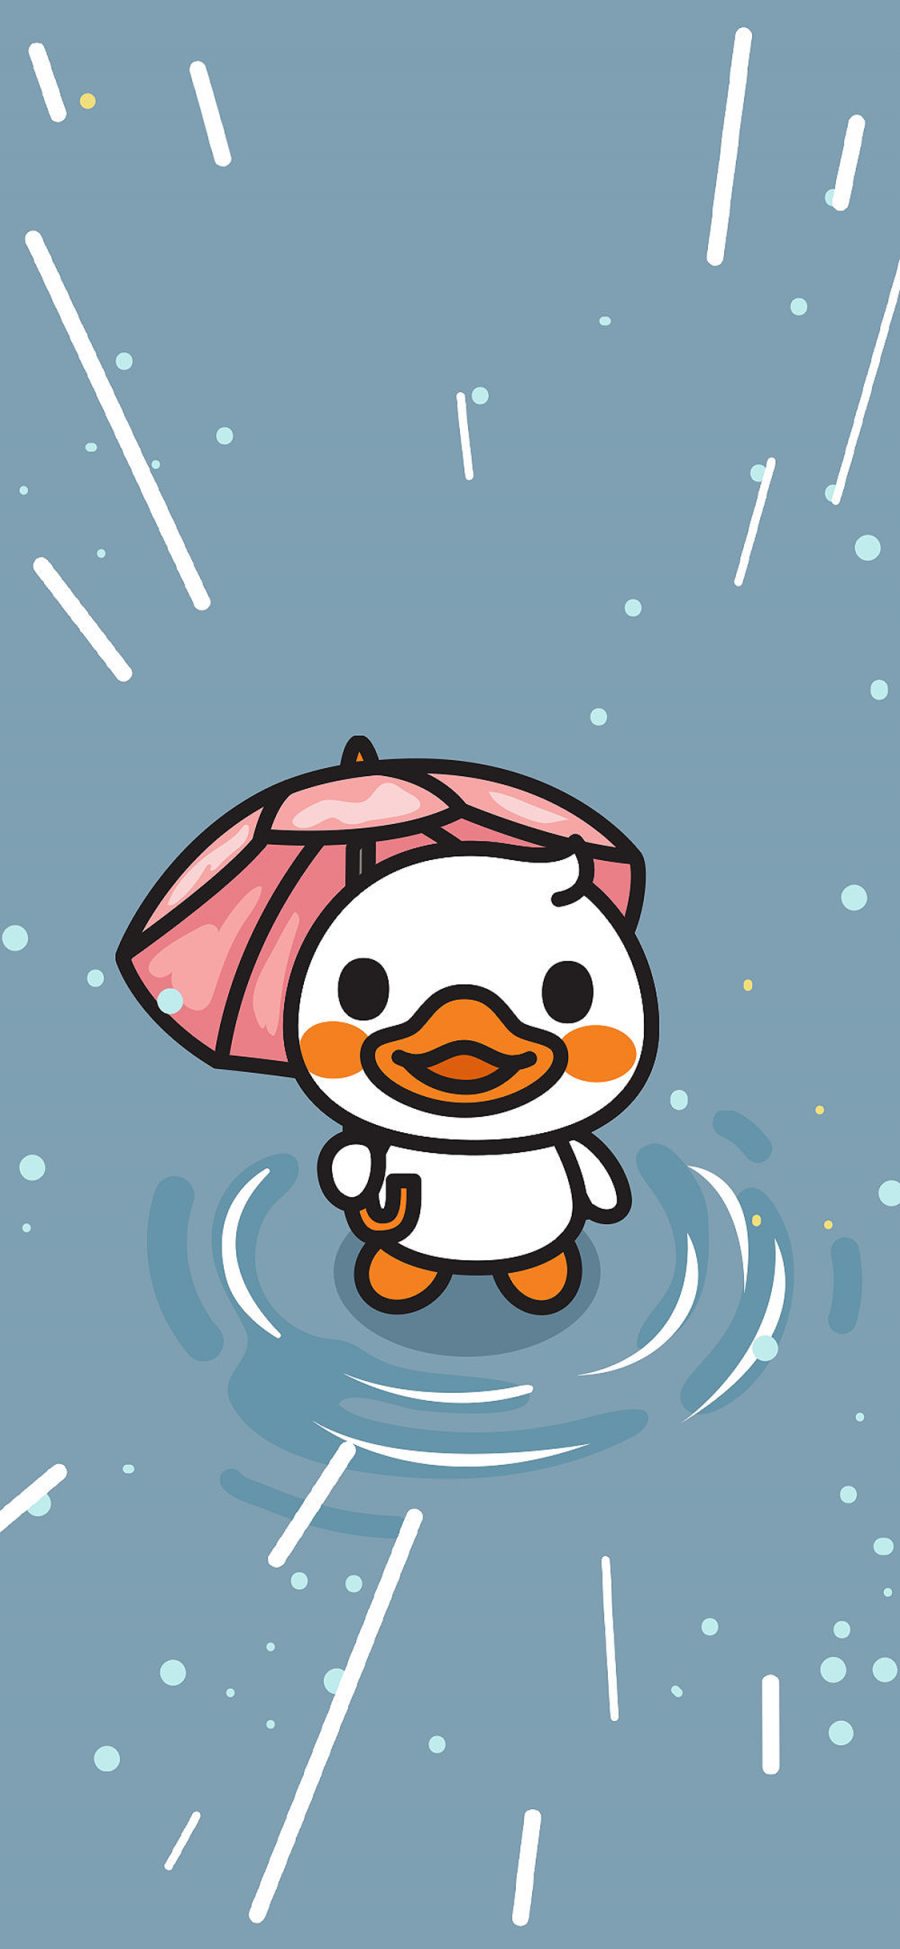 [2436×1125]核桃小鸭 可爱 鸭子 伞 苹果手机动漫壁纸图片